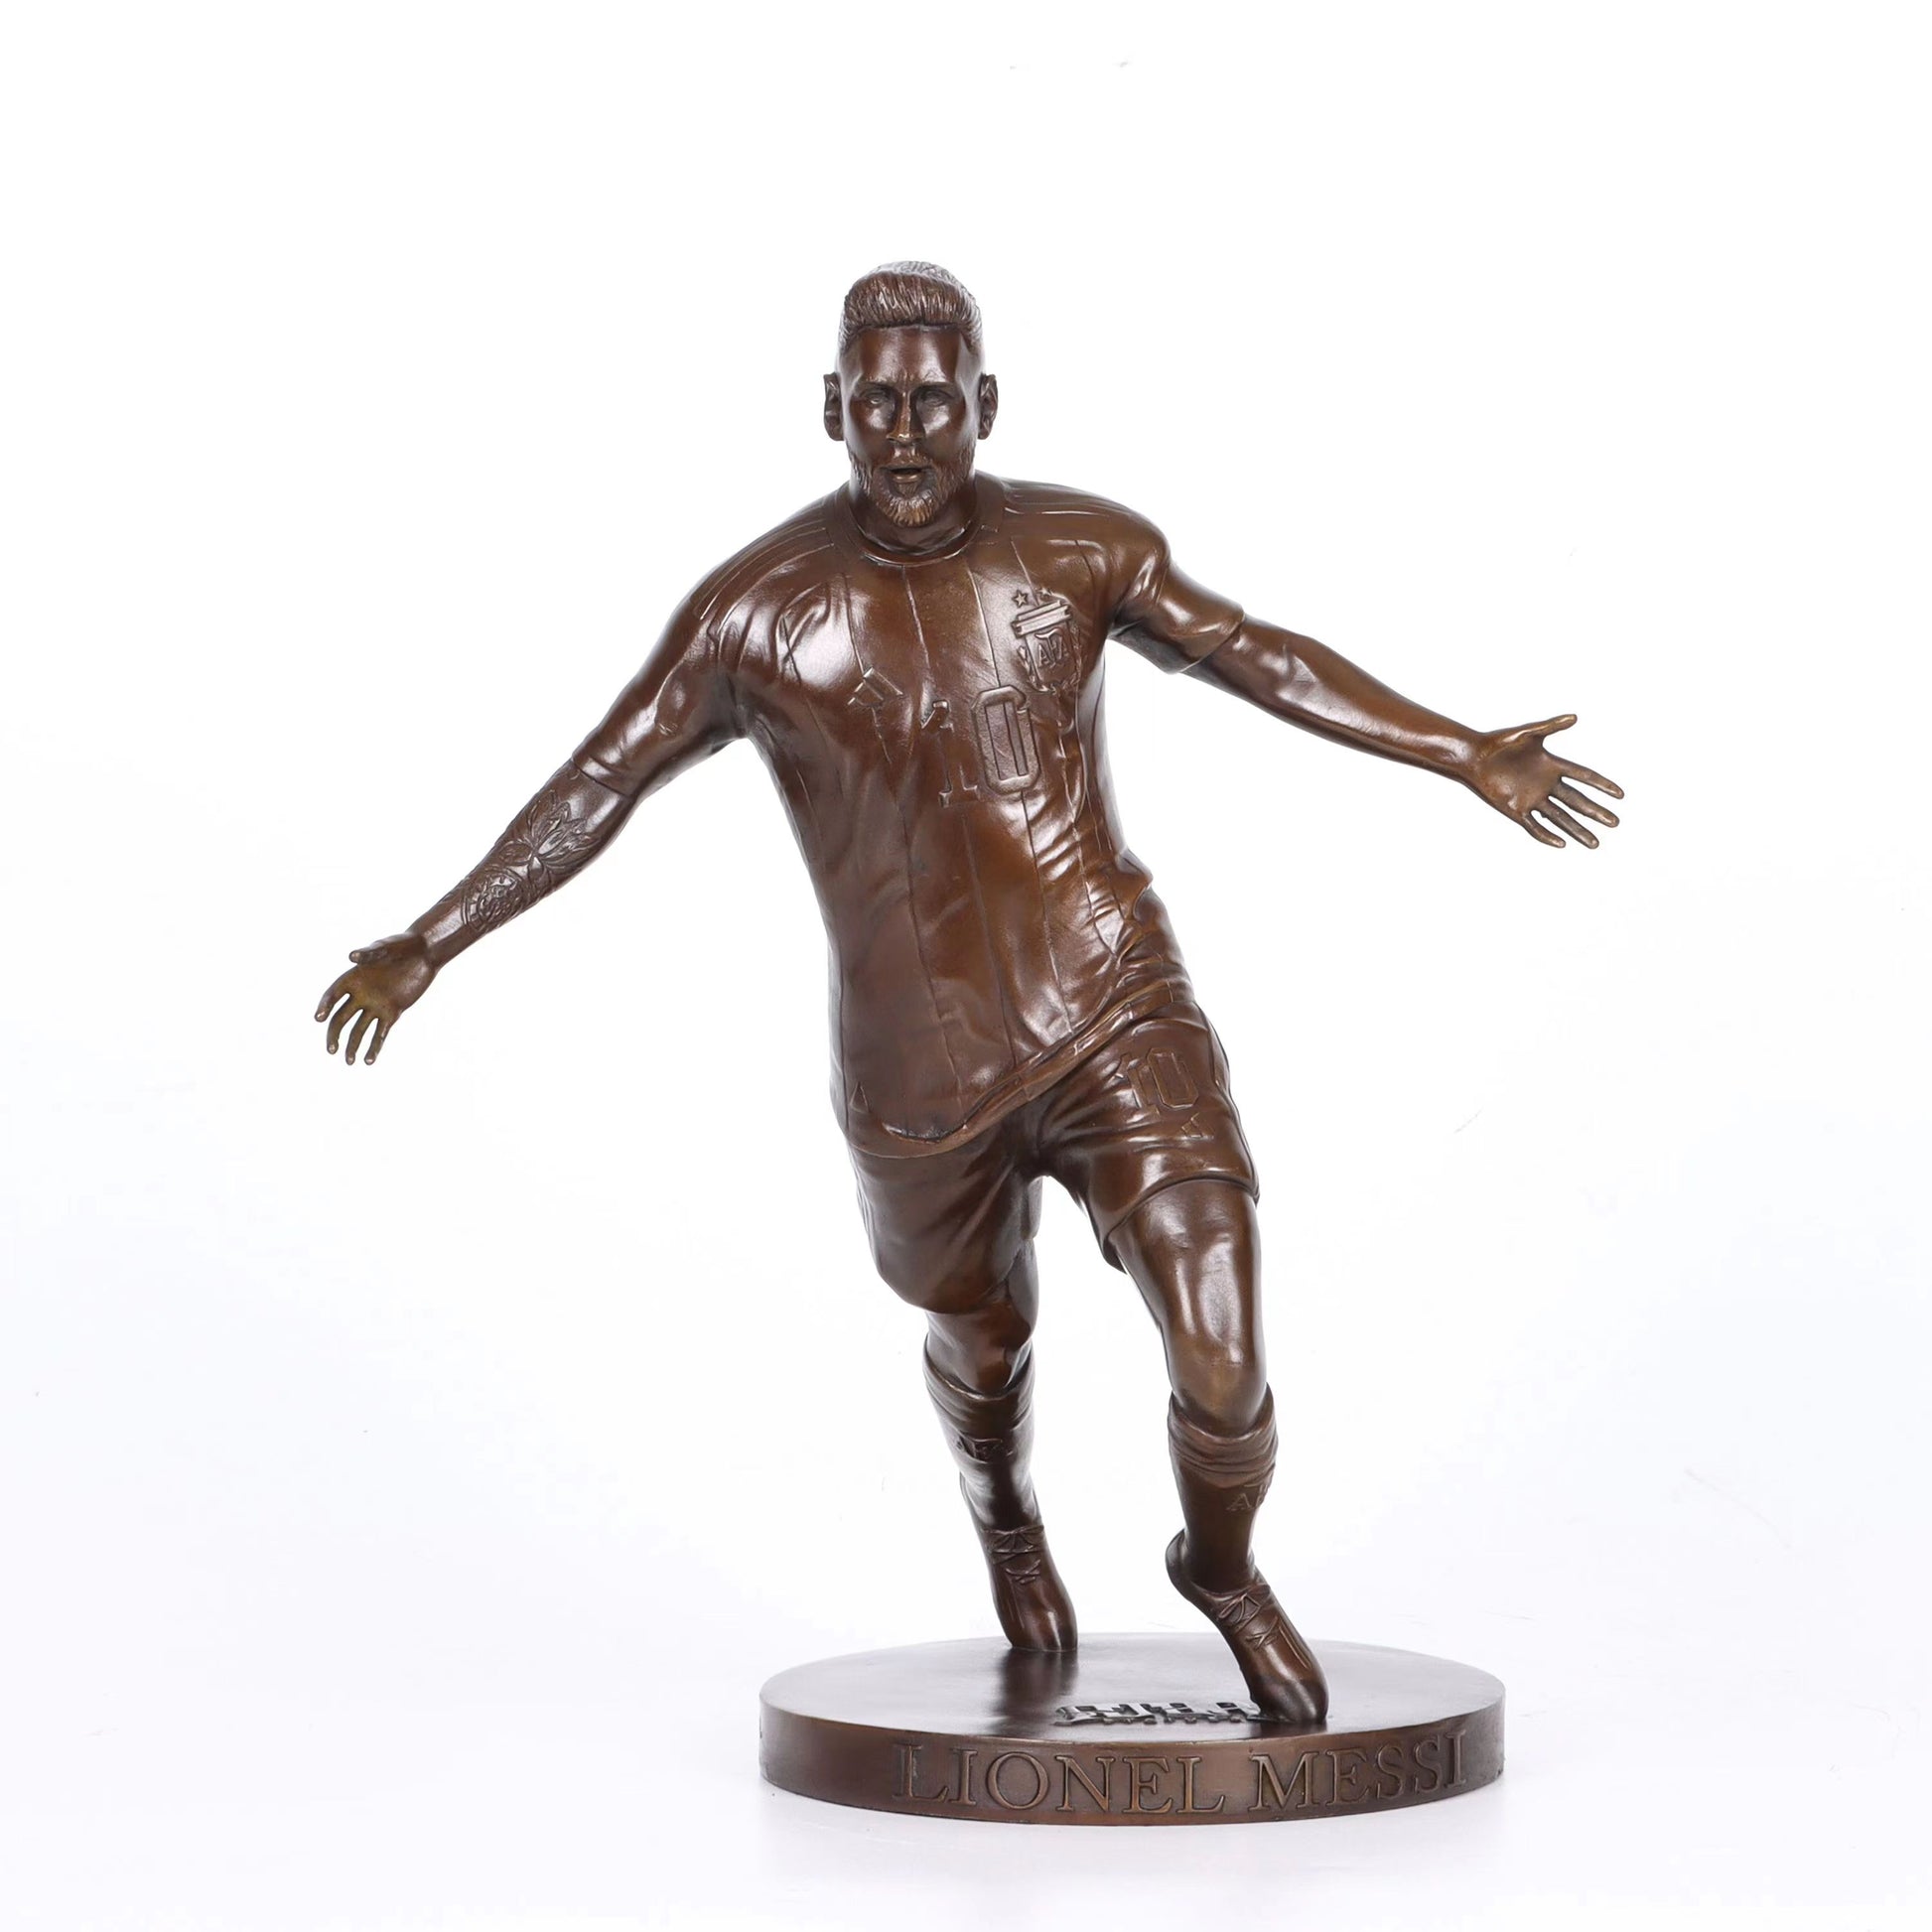 Lionel Messi Statue Figurine 2